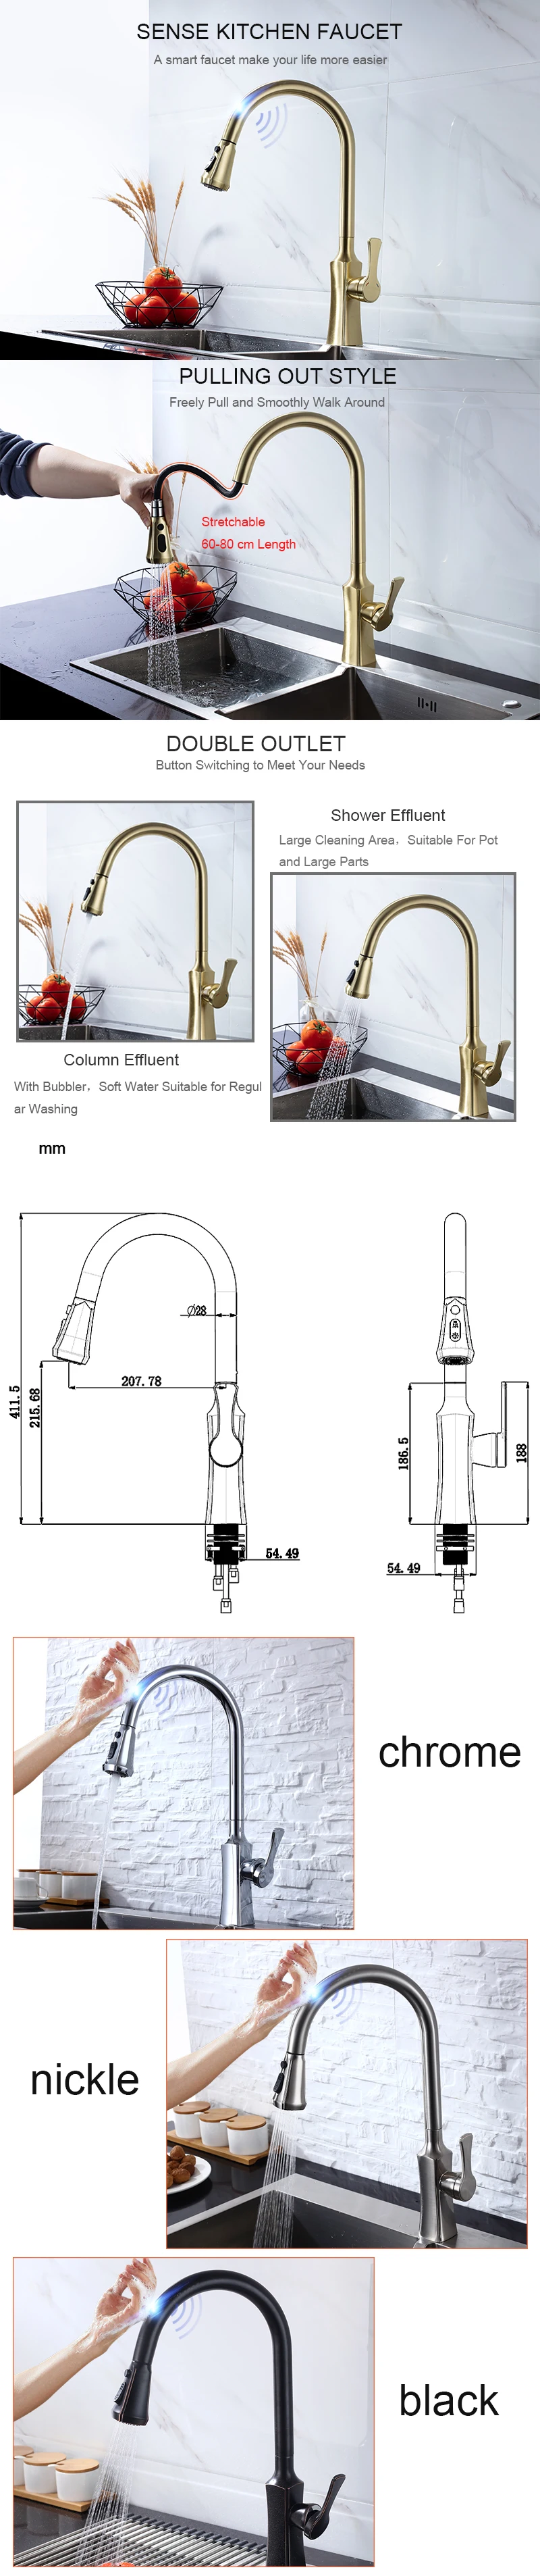 Senlesen Sense кухонный кран выдвижной носик смеситель для раковины с струей распылителя хром/Матовый никель/черный